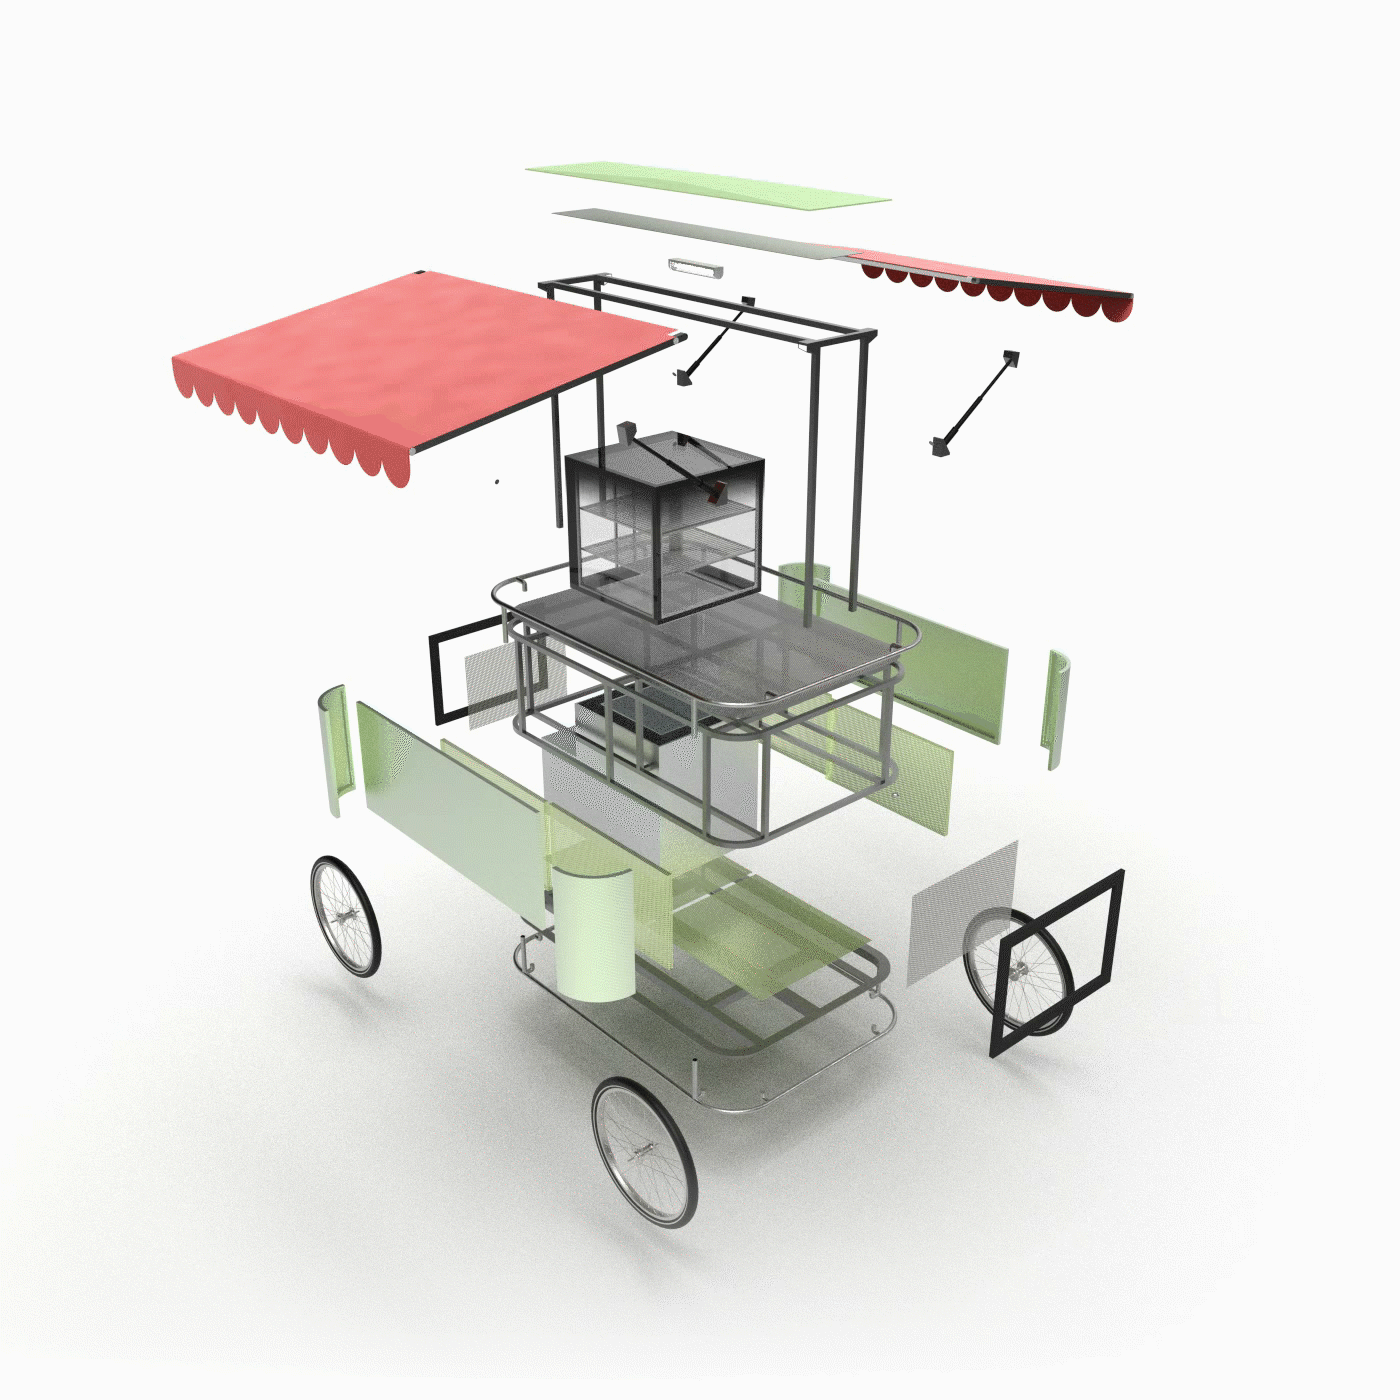 automobile automotive   concept concept art design India makeinindia Smart vegetables vendingcart